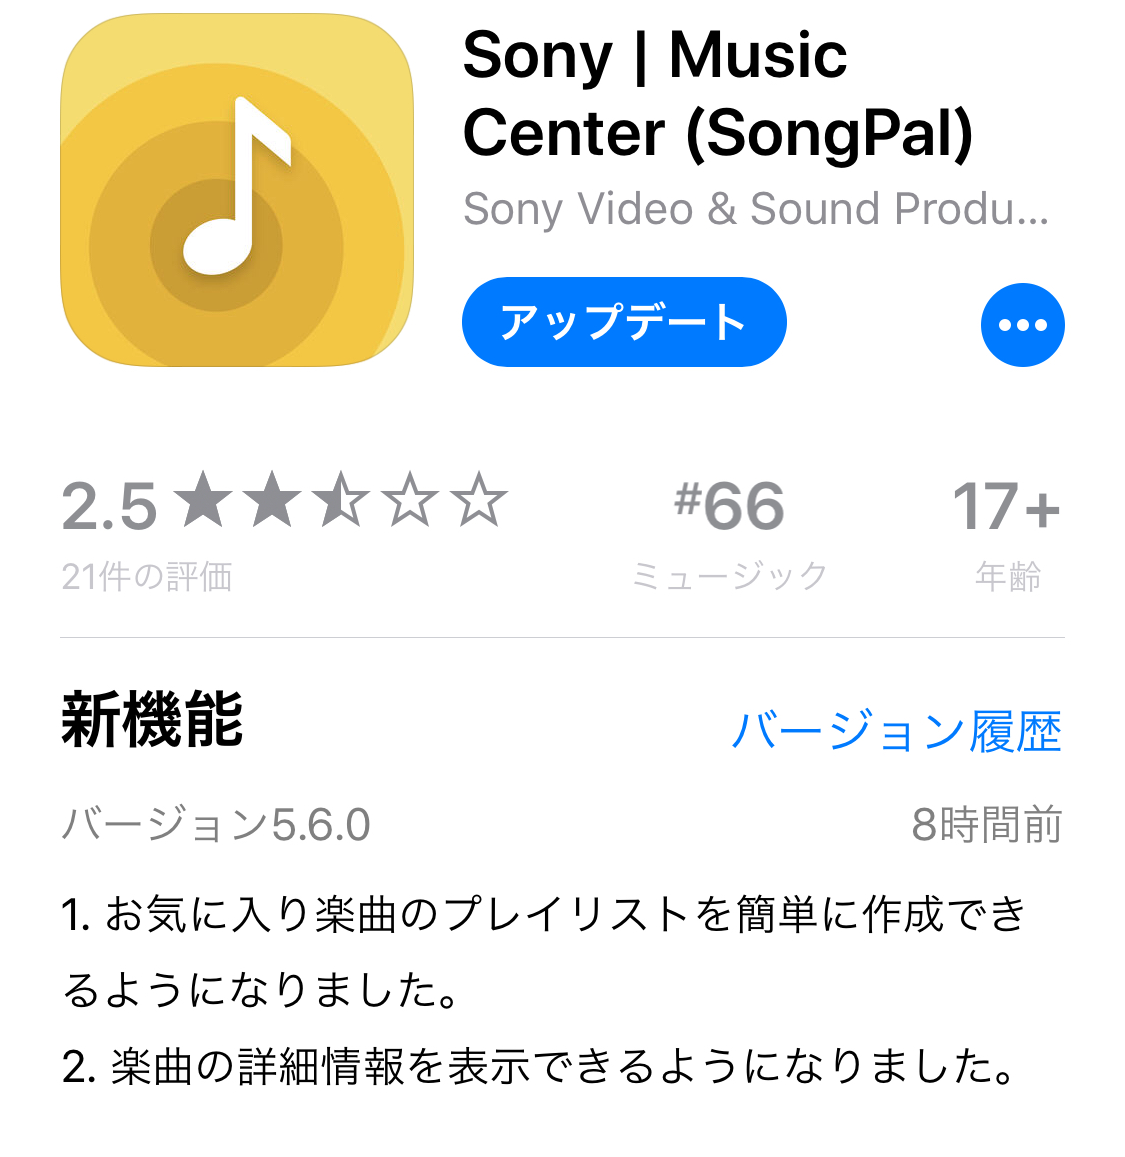 スマホ向け音楽再生アプリ Sony Music Center プレイリスト追加が簡単に 楽曲情報も表示 Phile Web